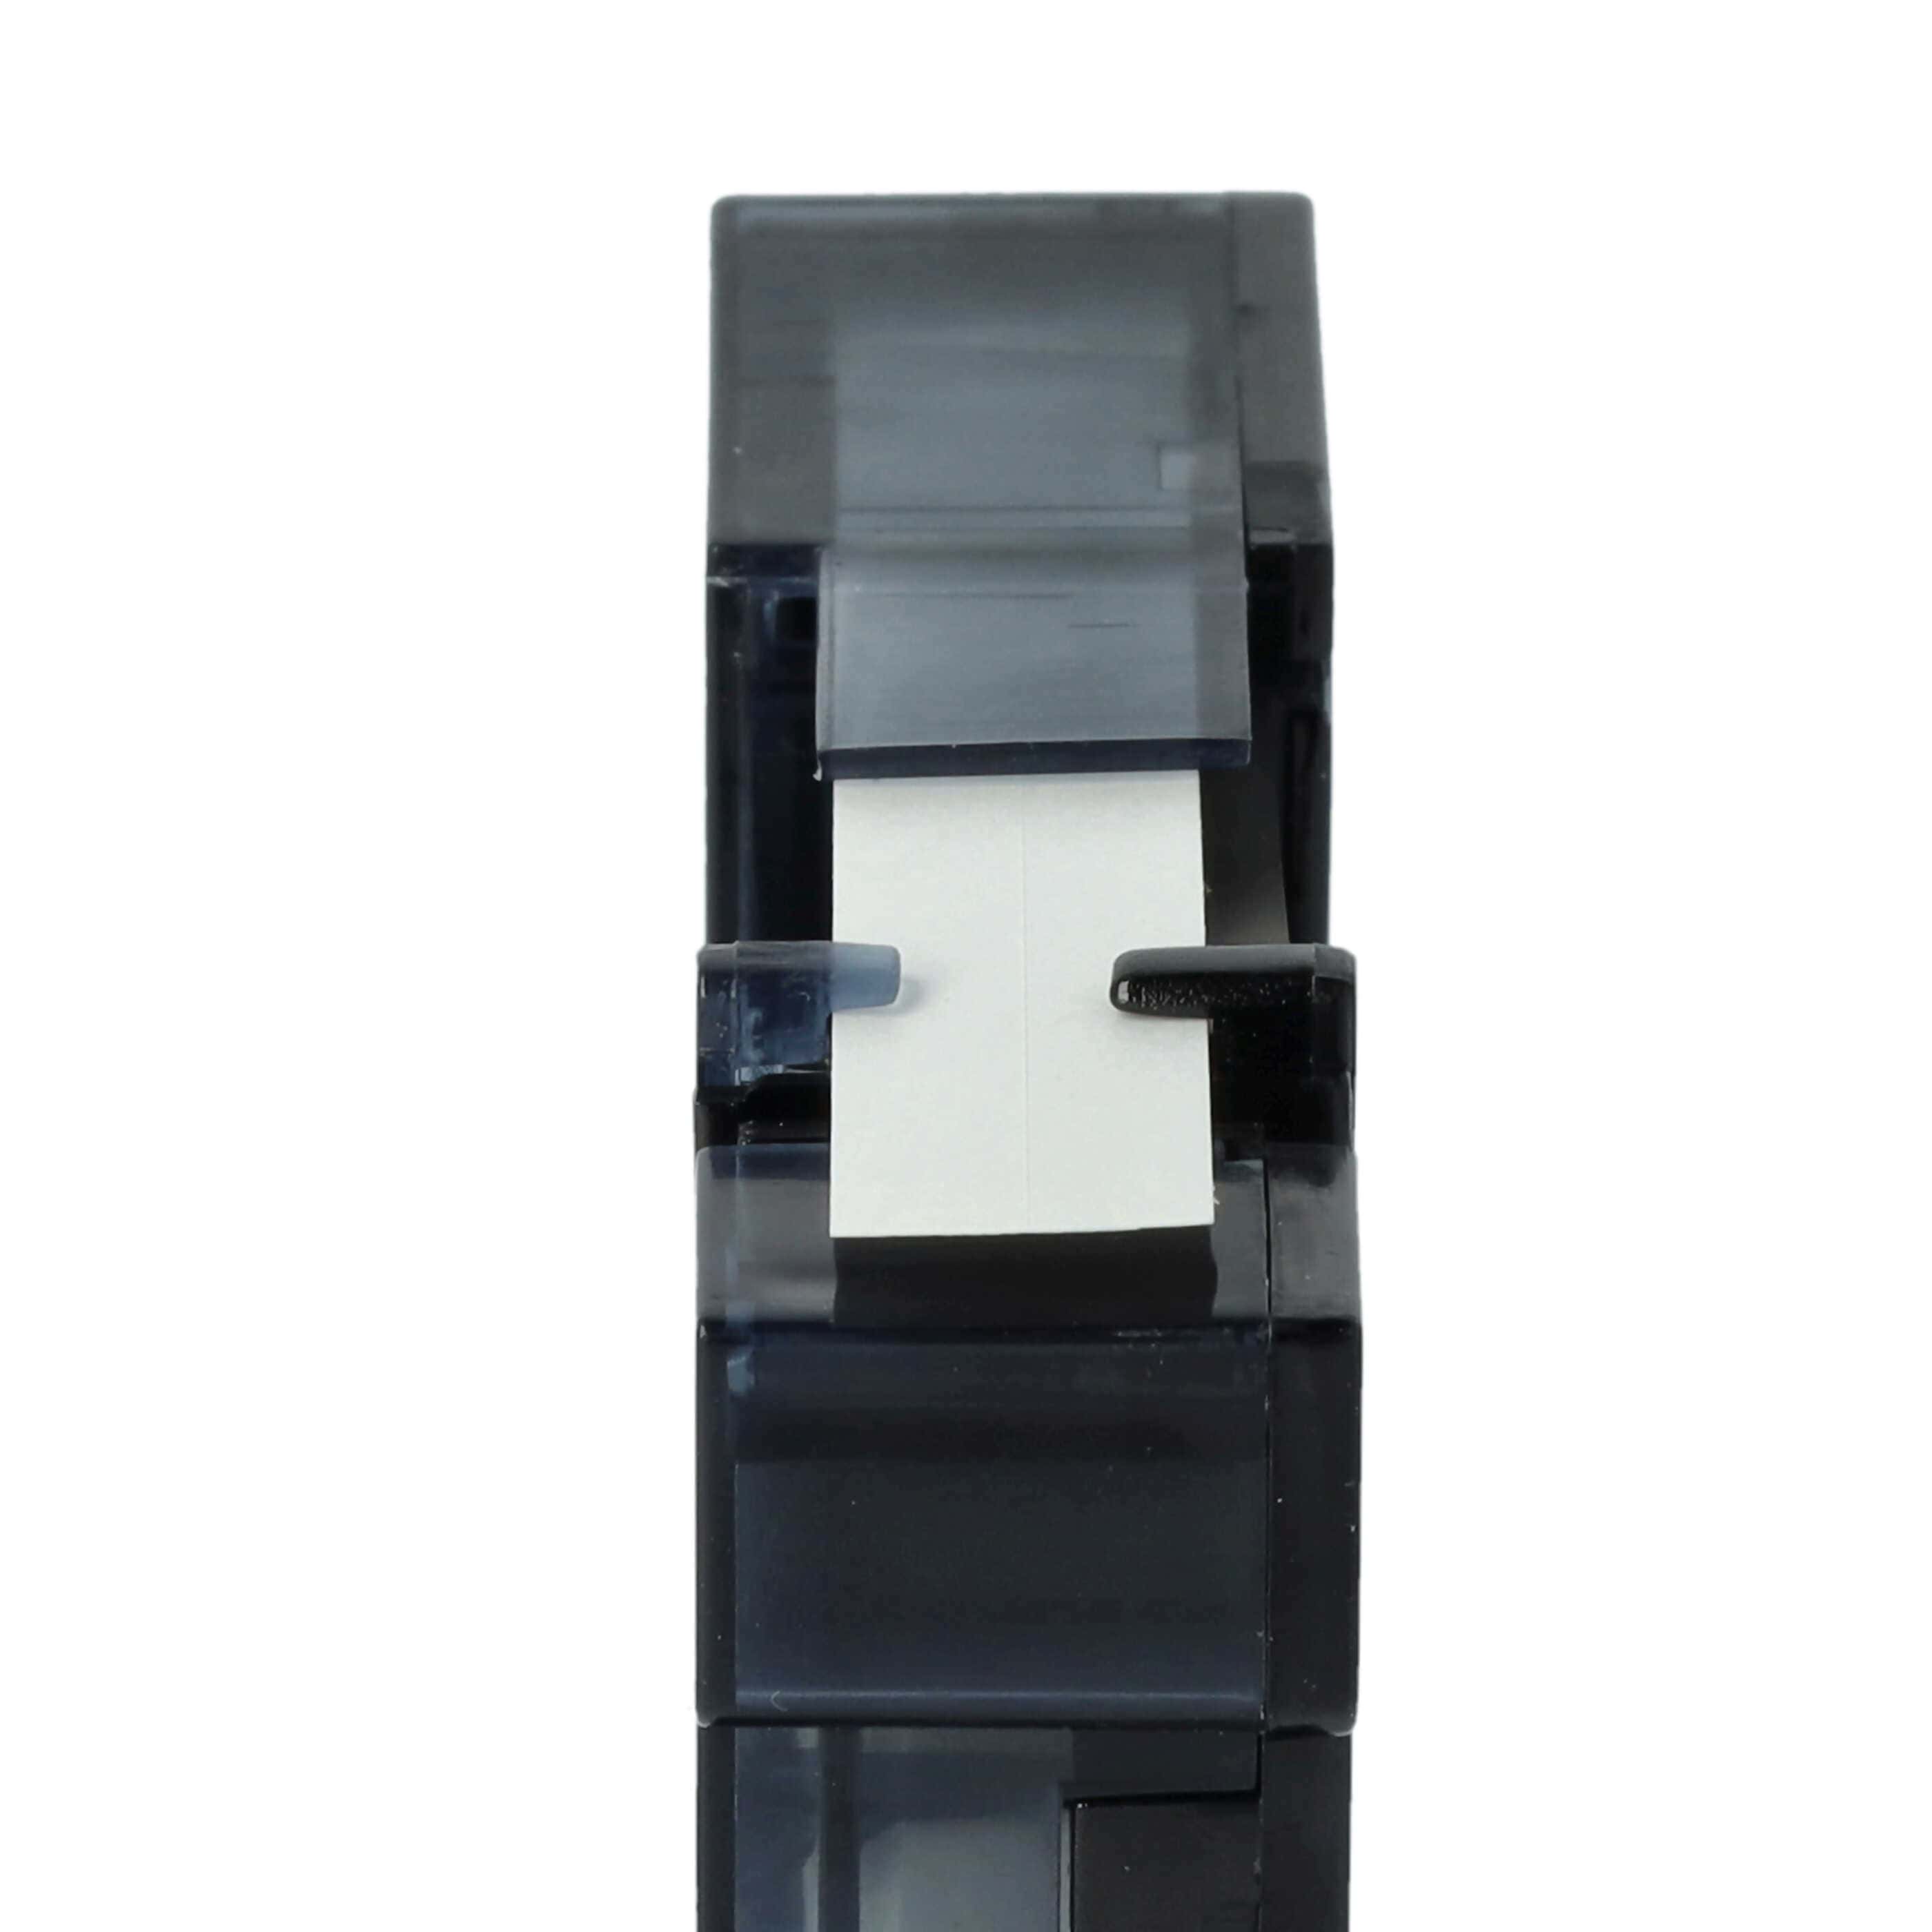 3x Casete cinta escritura reemplaza Dymo S0720680, 40913, D1 Negro su Blanco